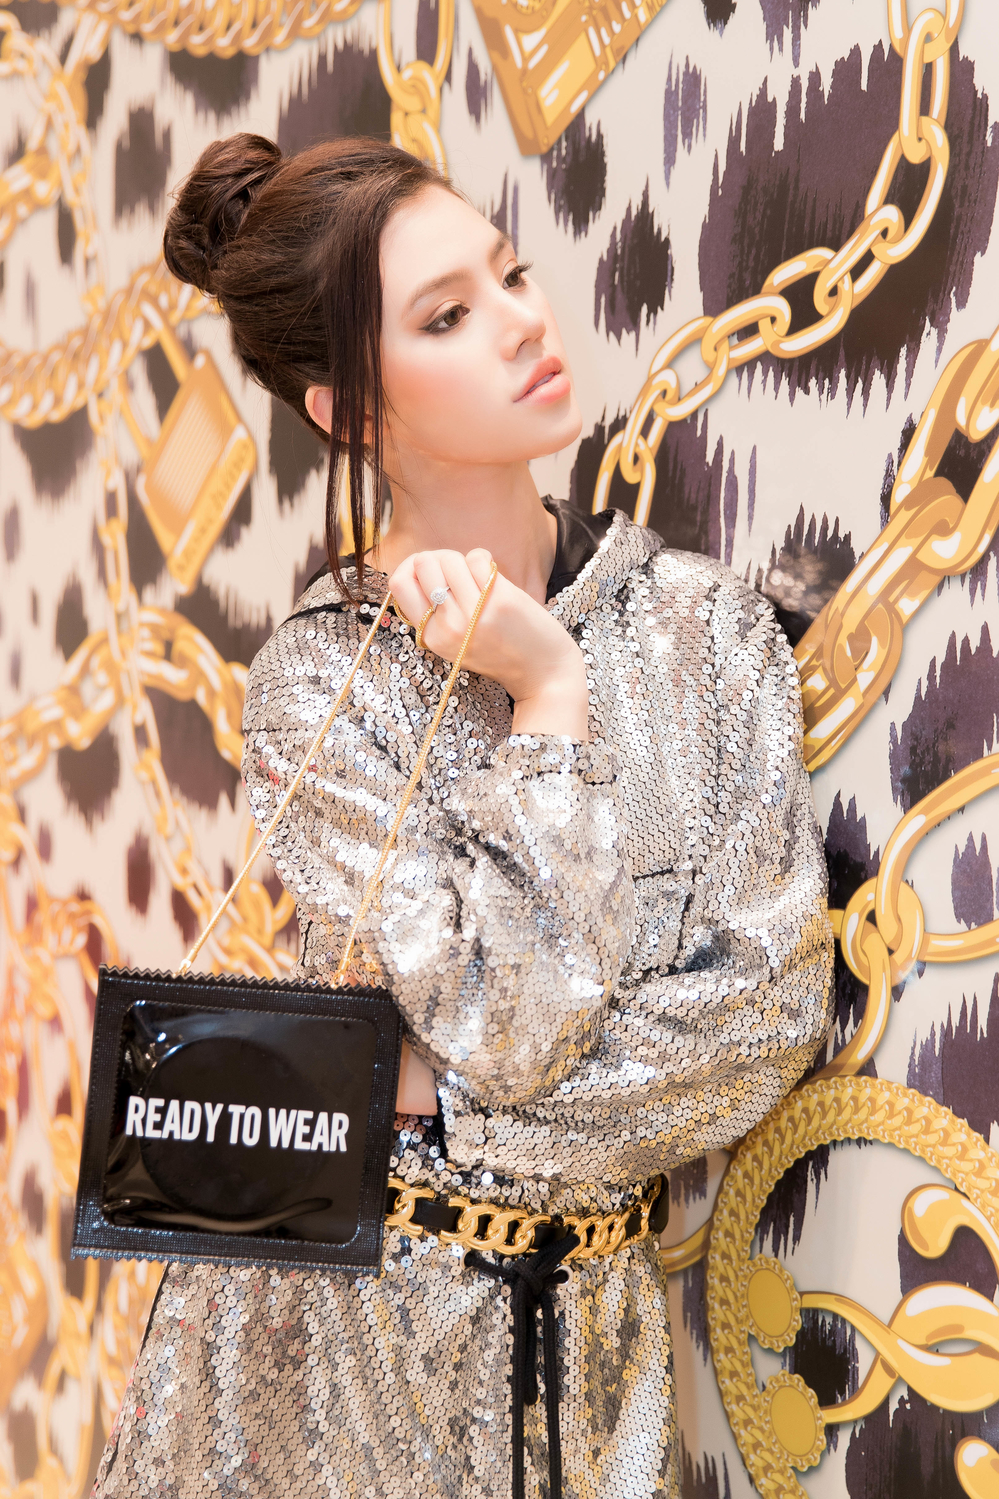 
Jolie Nguyễn xuất hiện tại sự kiện với bộ váy sequin lấp lánh, mang đậm chất thể thao. Người đẹp kết hợp với túi xách hình bao cao su độc đáo. 